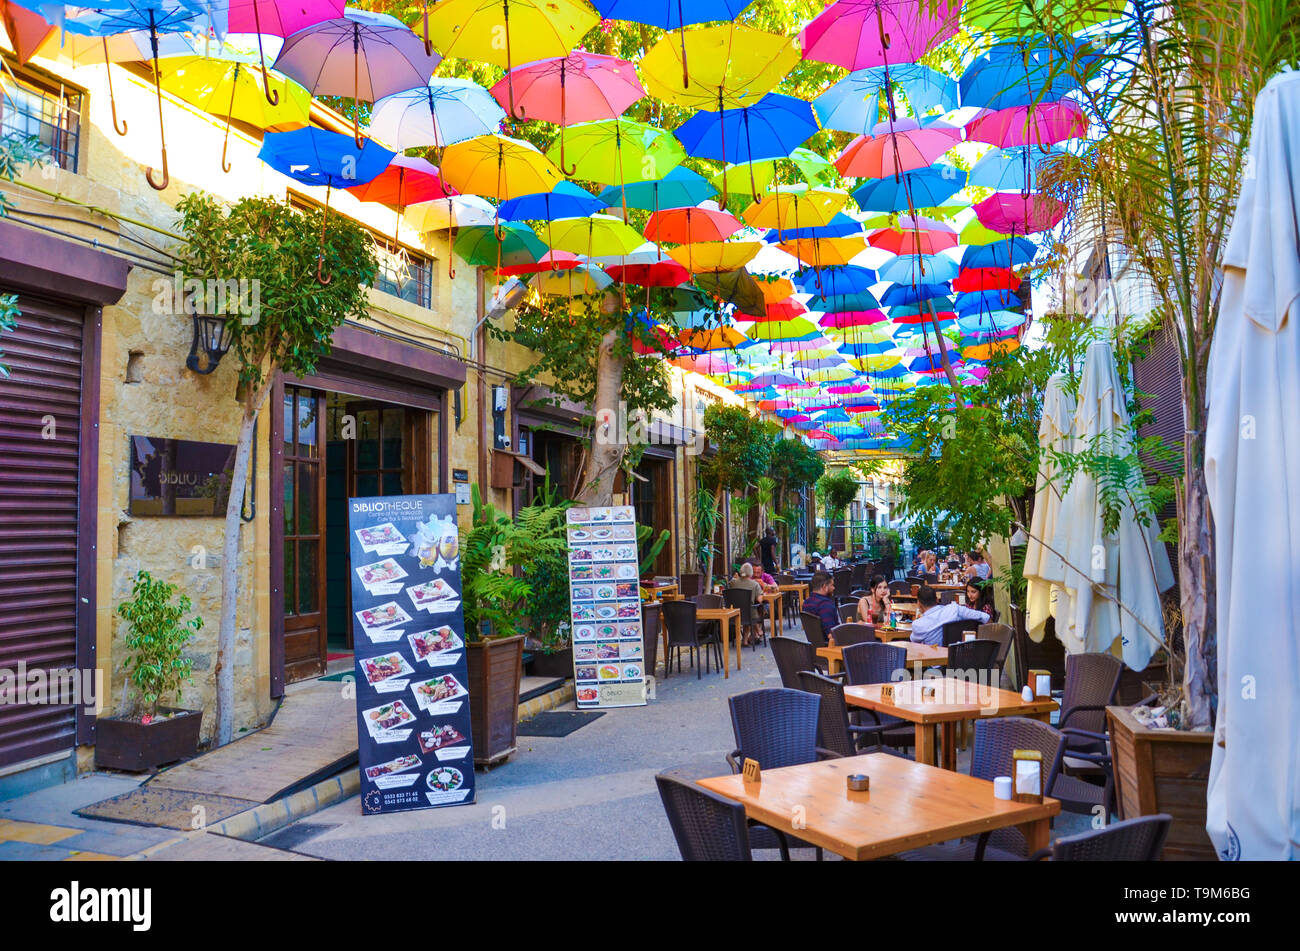 Nicosie, Chypre - Oct 30th 2018 : café en plein air avec parasols colorés étonnants décorant le haut de la rue. Destination touristique populaire dans le centre-ville Banque D'Images